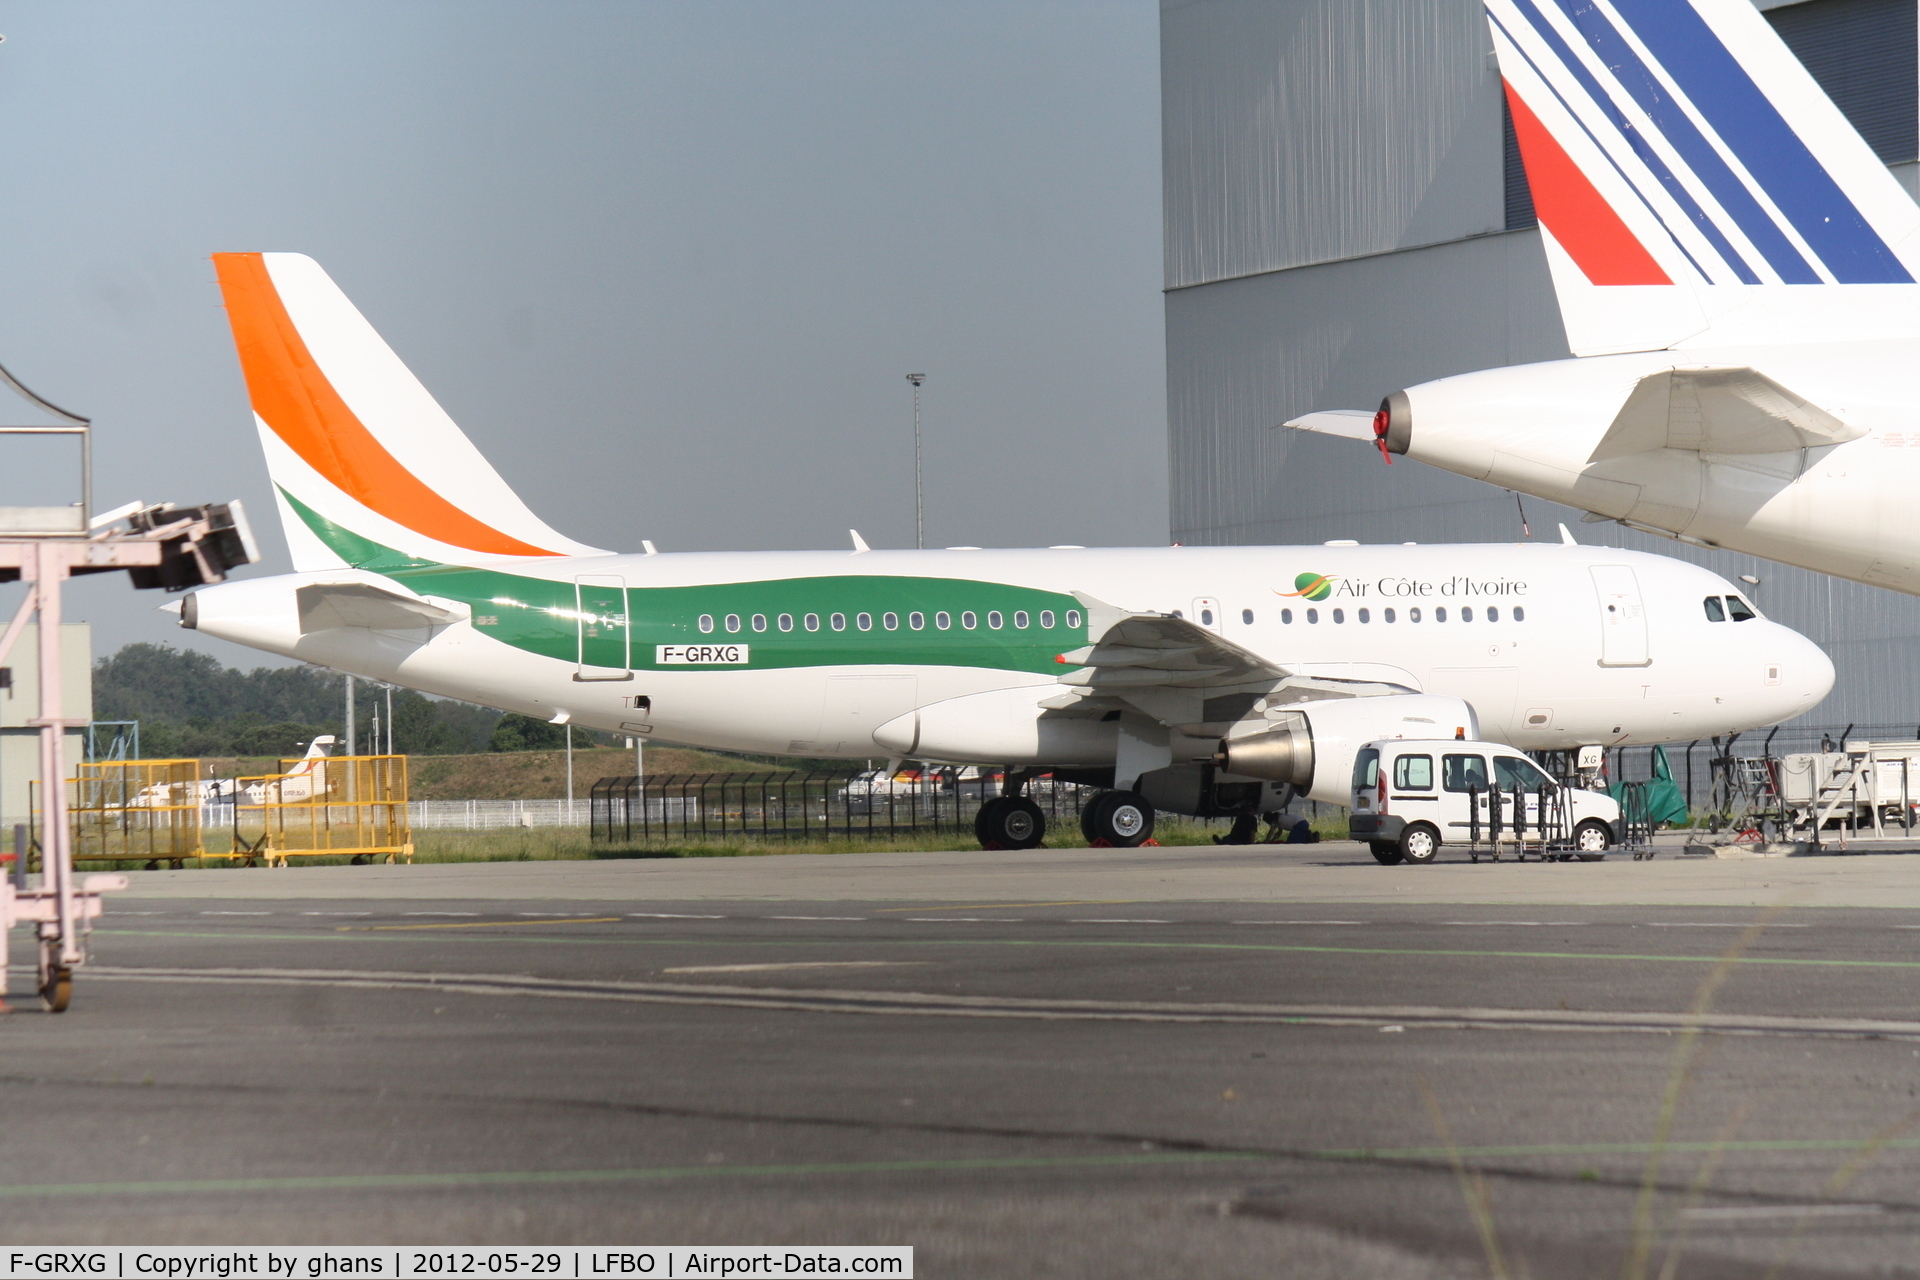 F-GRXG, 2004 Airbus A319-115LR C/N 2213, Air Cote d'Ivoire